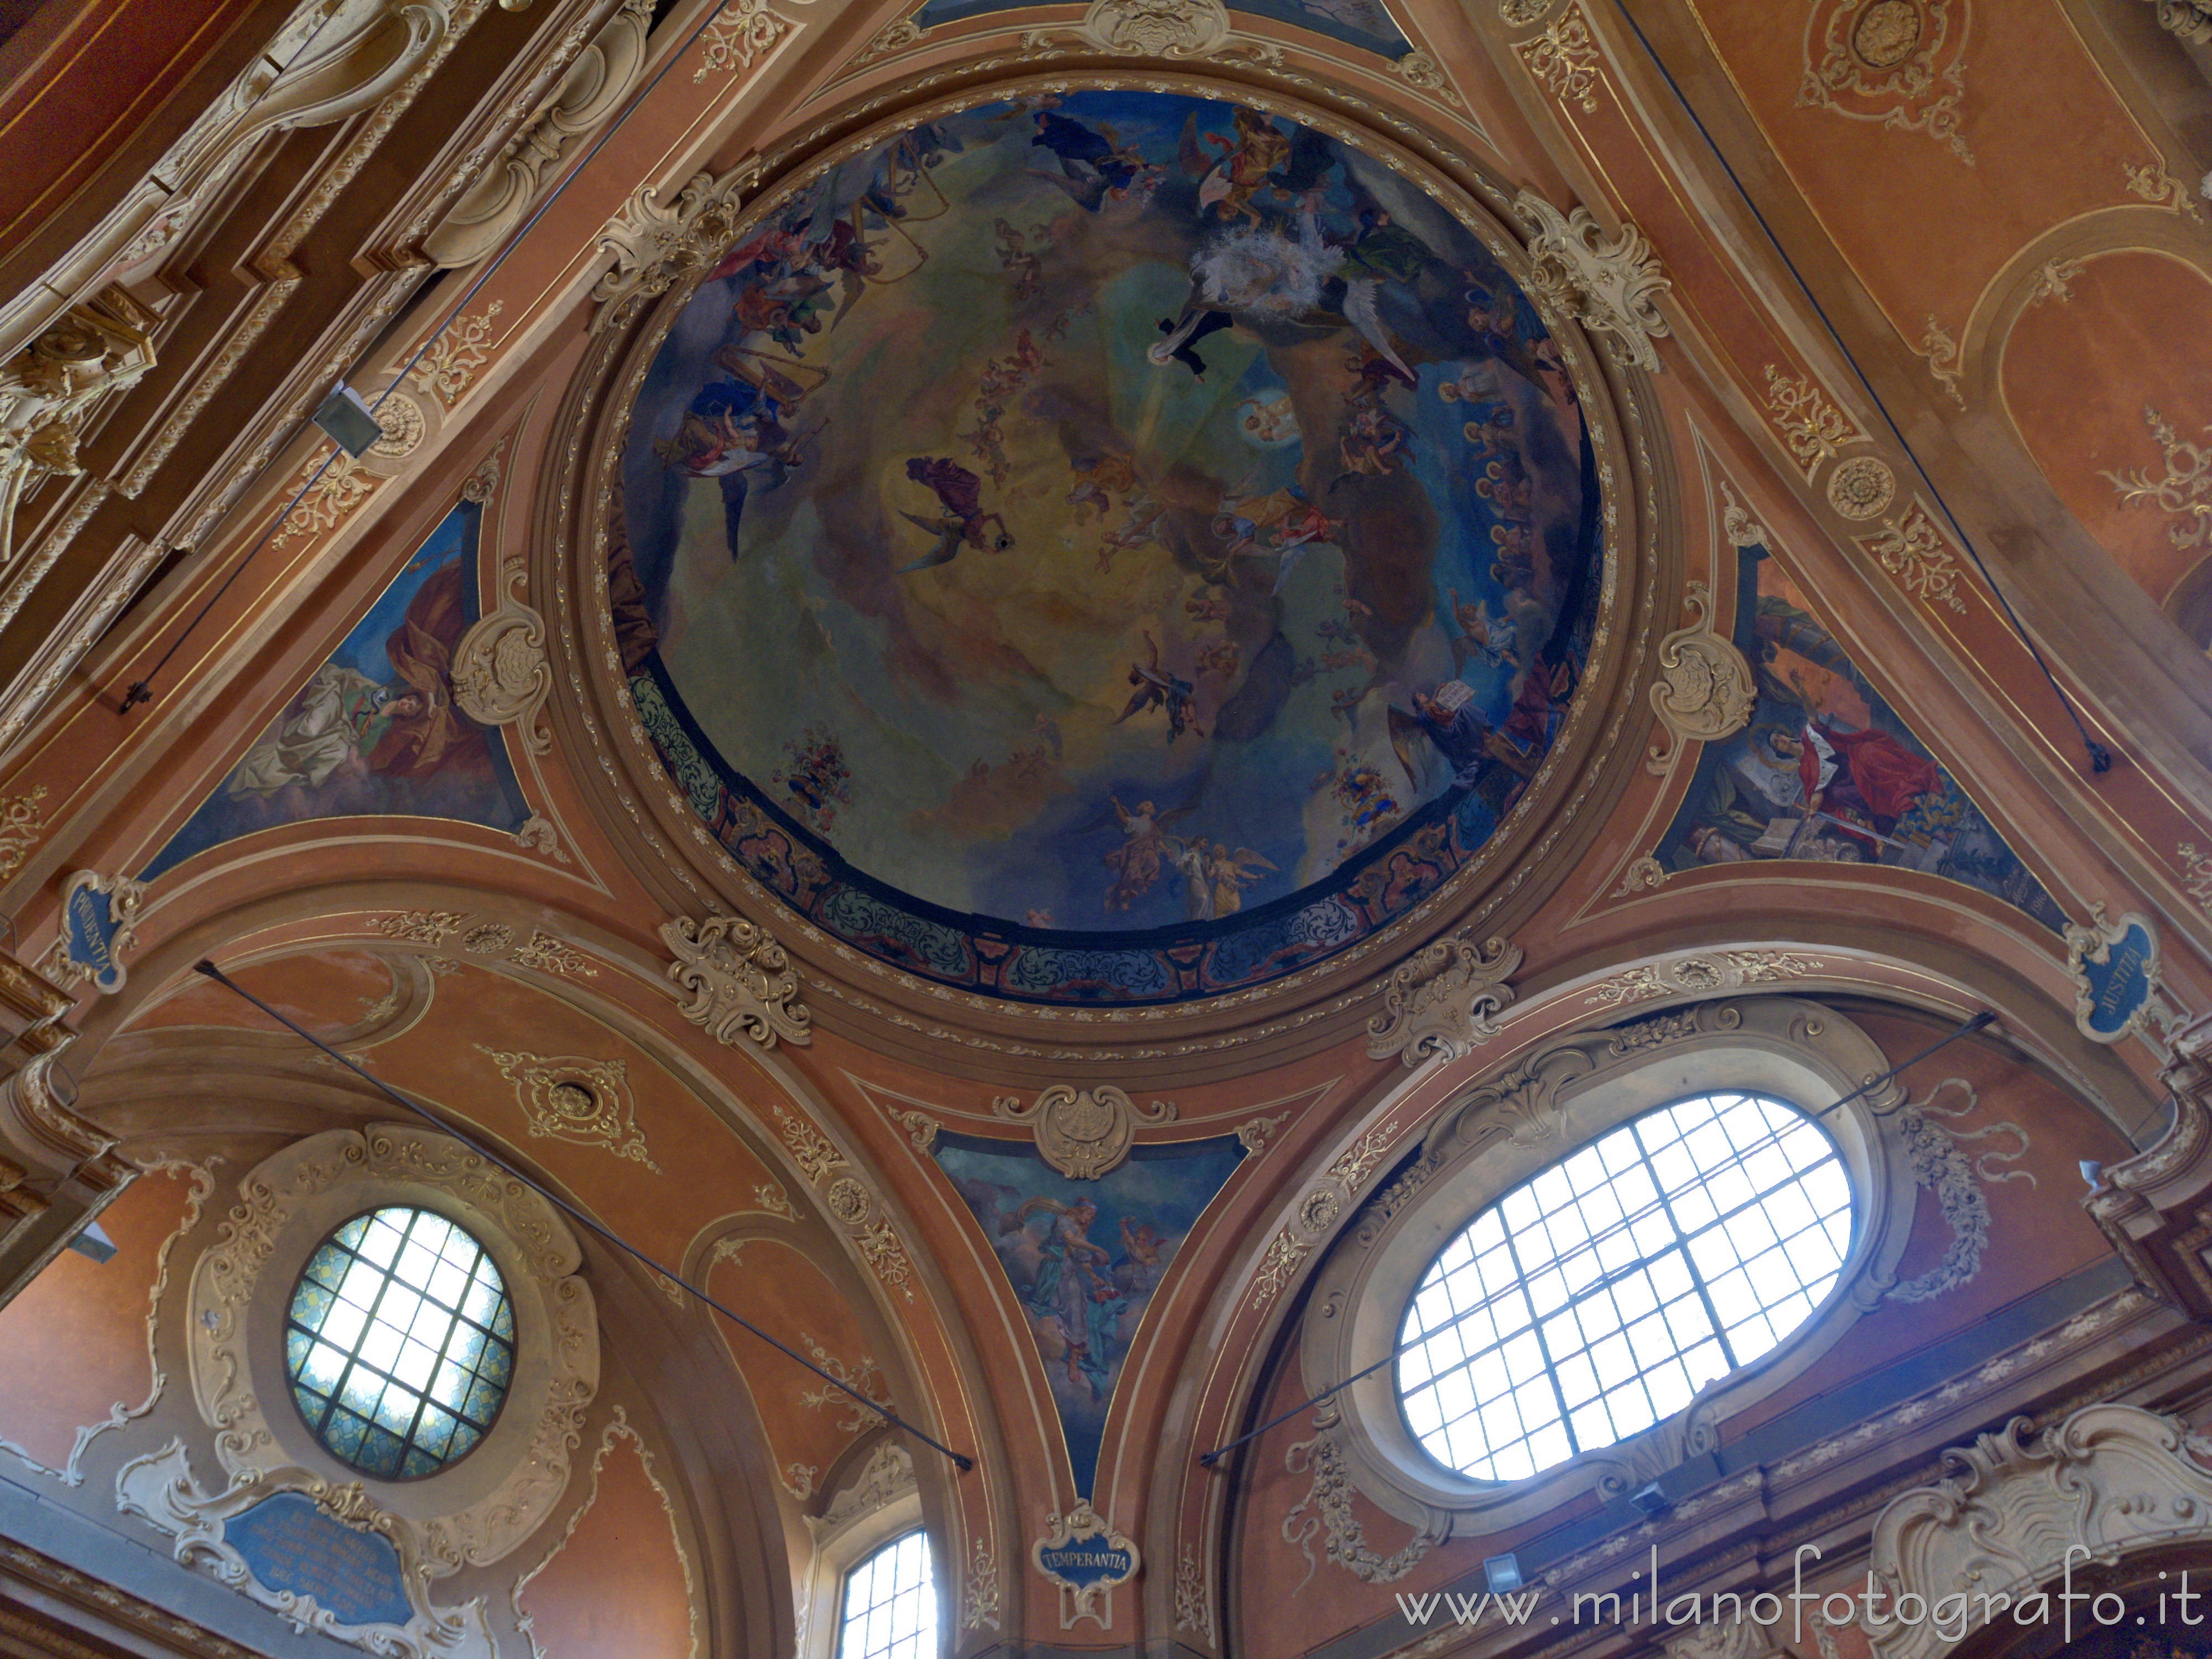 Milano: Soffitto decorato sopra l'entrata della Chiesa di Santa Francesca Romana - Milano